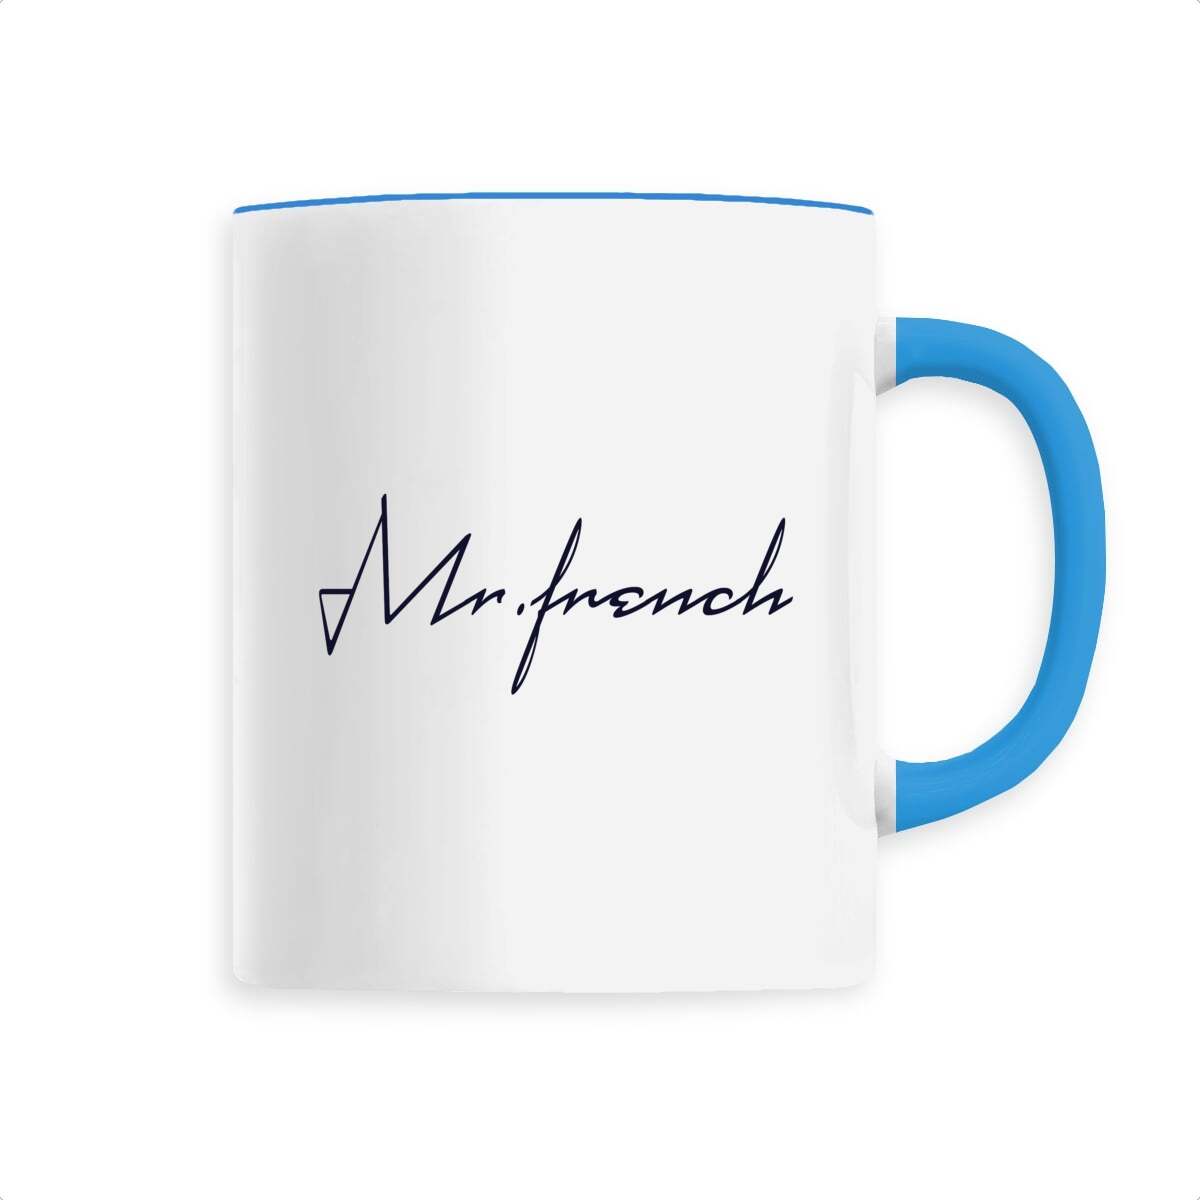 Mug Céramique - Mr French, mug Mr French en céramique de T-French, mug céramique avec impression, mug idée cadeau fête des pères, mug french touch, mug homme Mr French, mug french, mug cadeau, mug bleu